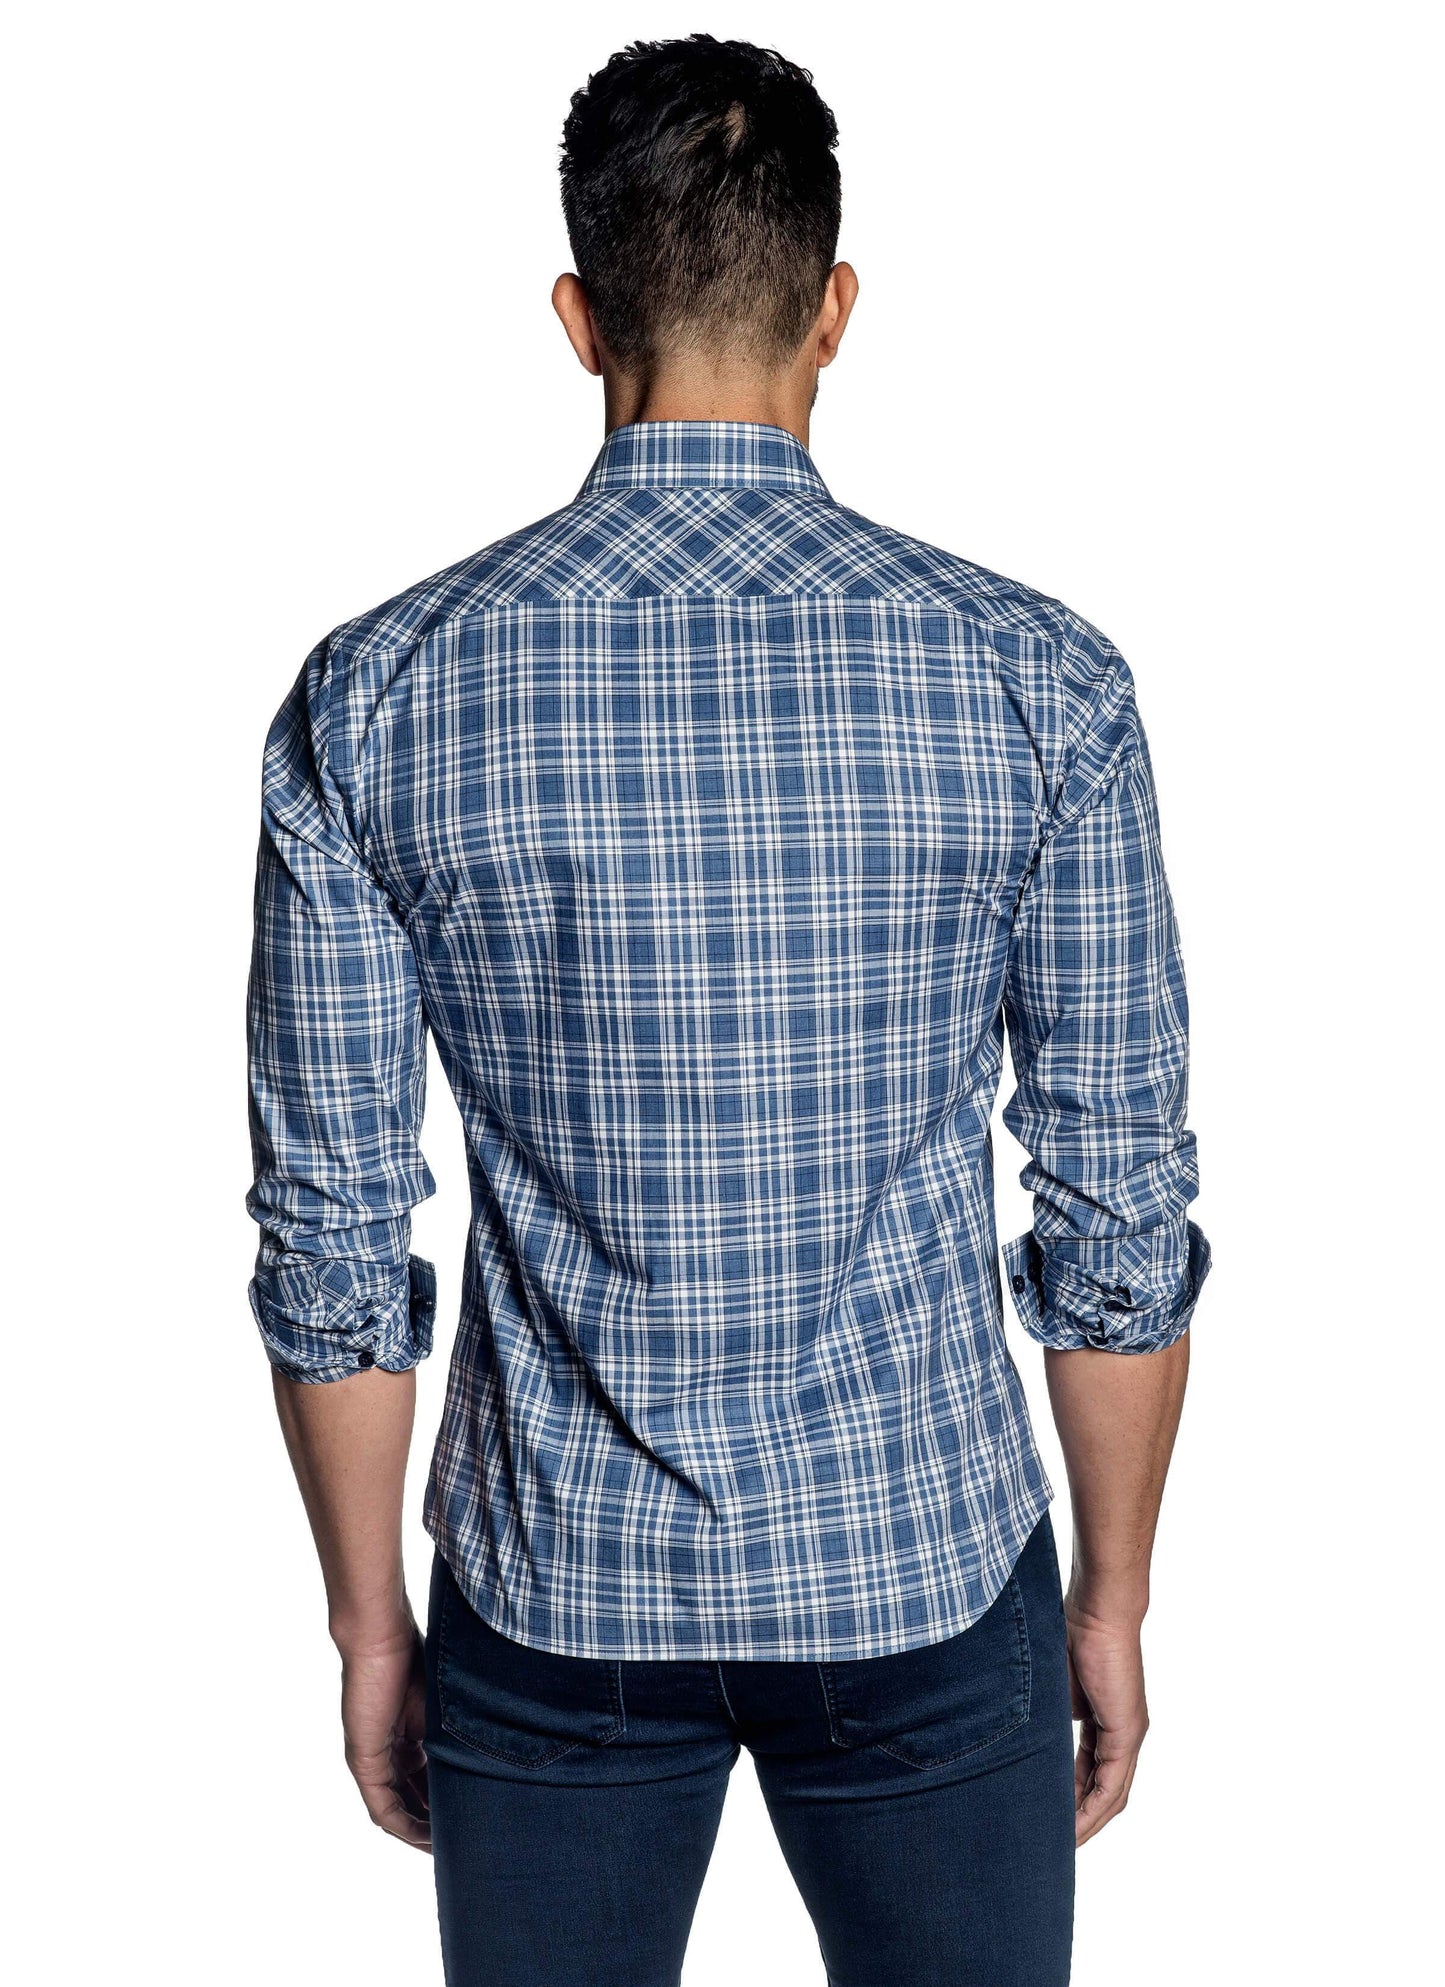 Light Blue Plaid Shirt for Men OT-104 - Back - Jared Lang